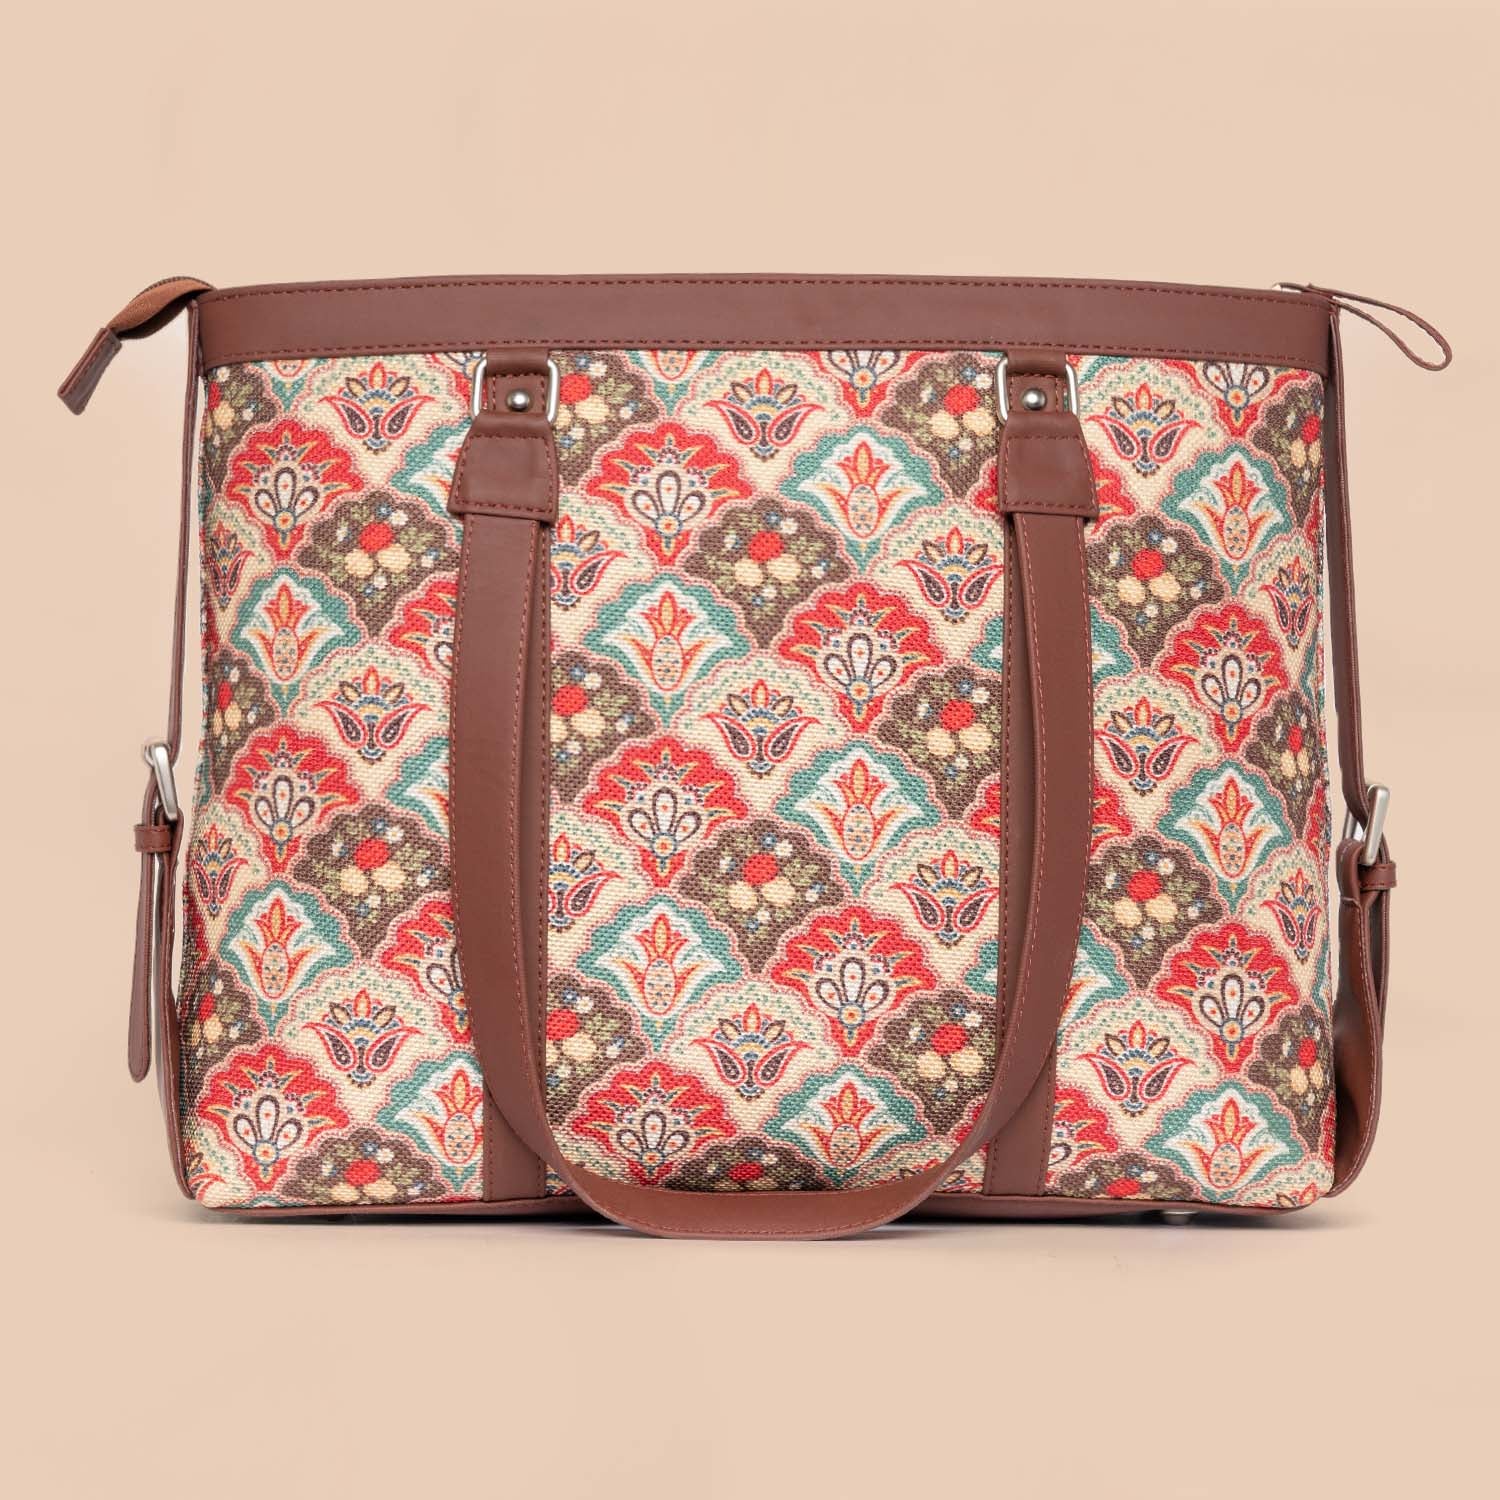 Zouk Handbags : Buy Zouk Womens Handcrafted Vegan Printed Mughal Motif Dome  Shaped Bag Online